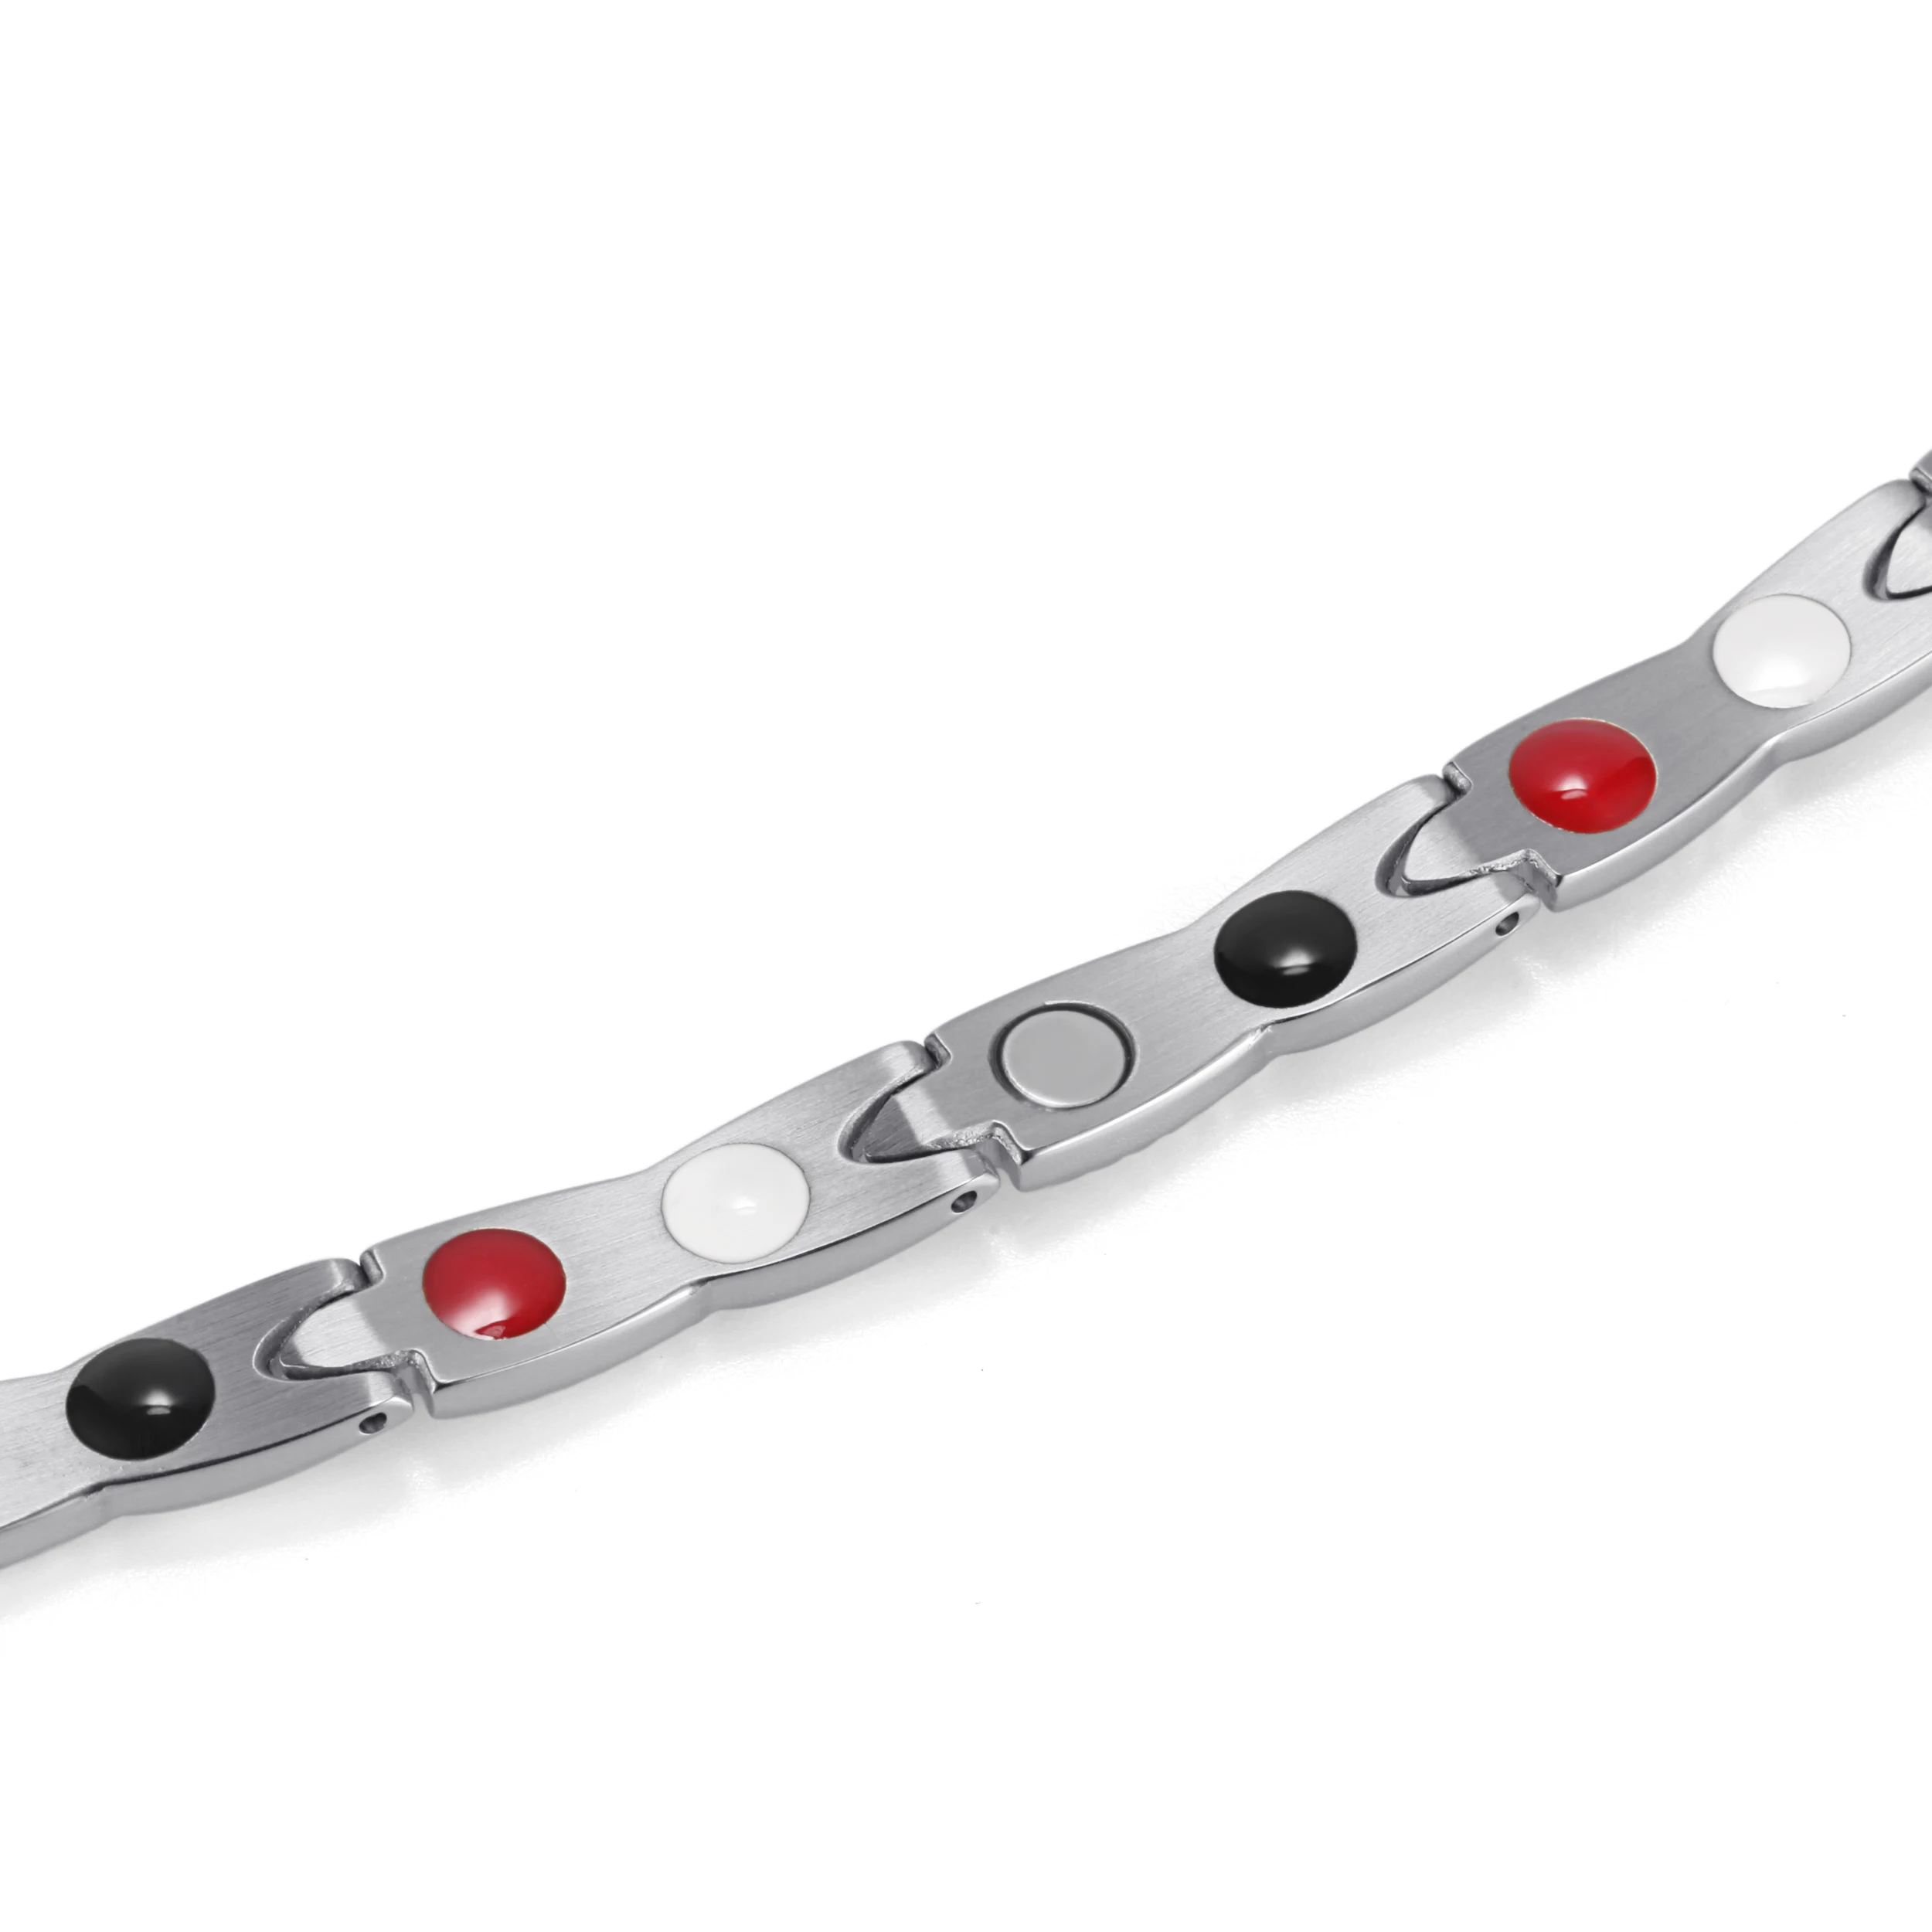 H90af7b25be444ee2a270a90bd0f47300Z - Stainless Steel Bracelet Anklets for Arthritis